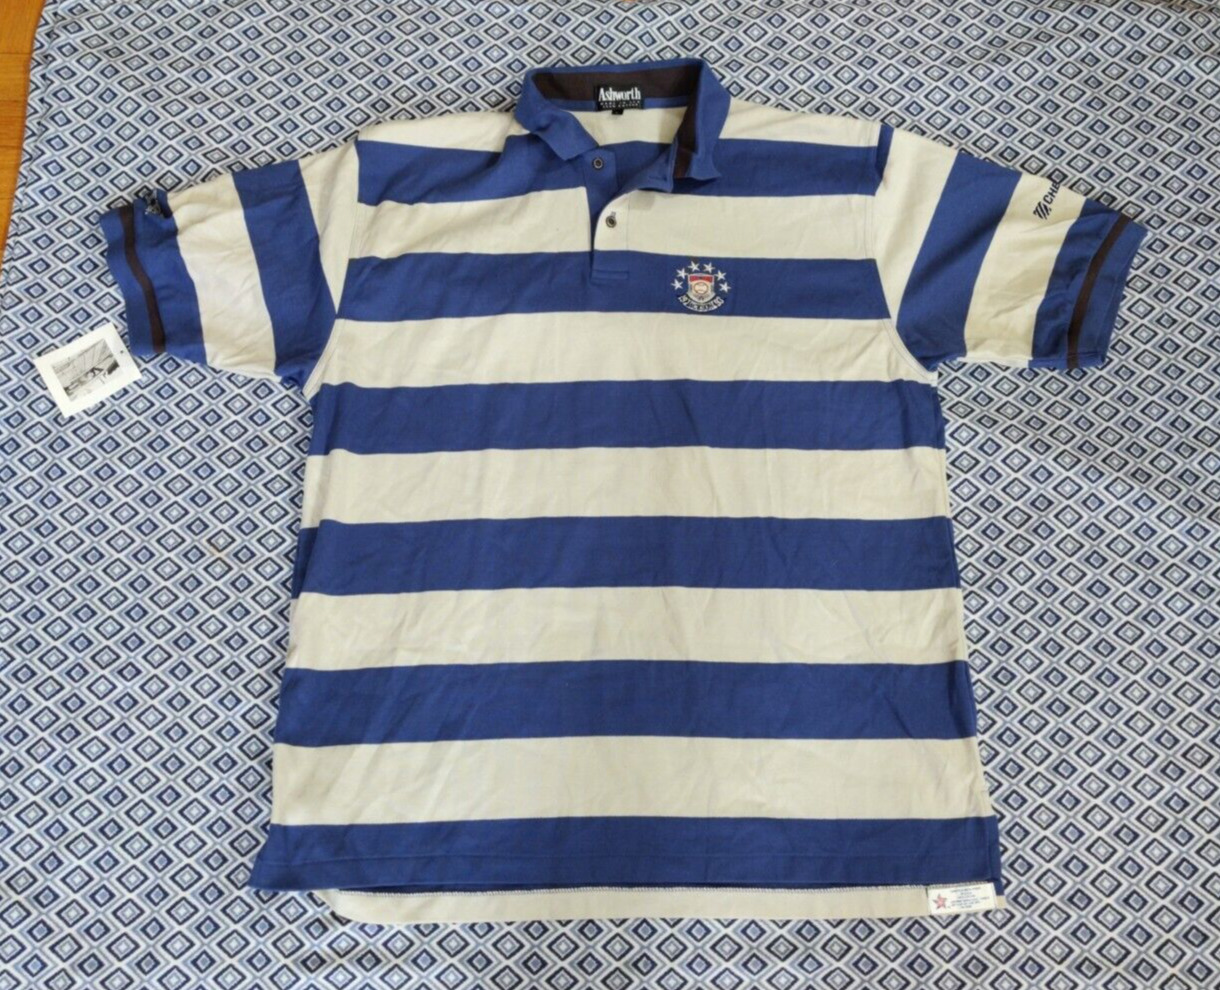 IBM Hall of Fame  polo shirt Vintage 1993 Ashworth  NEW Size XL  Jackson